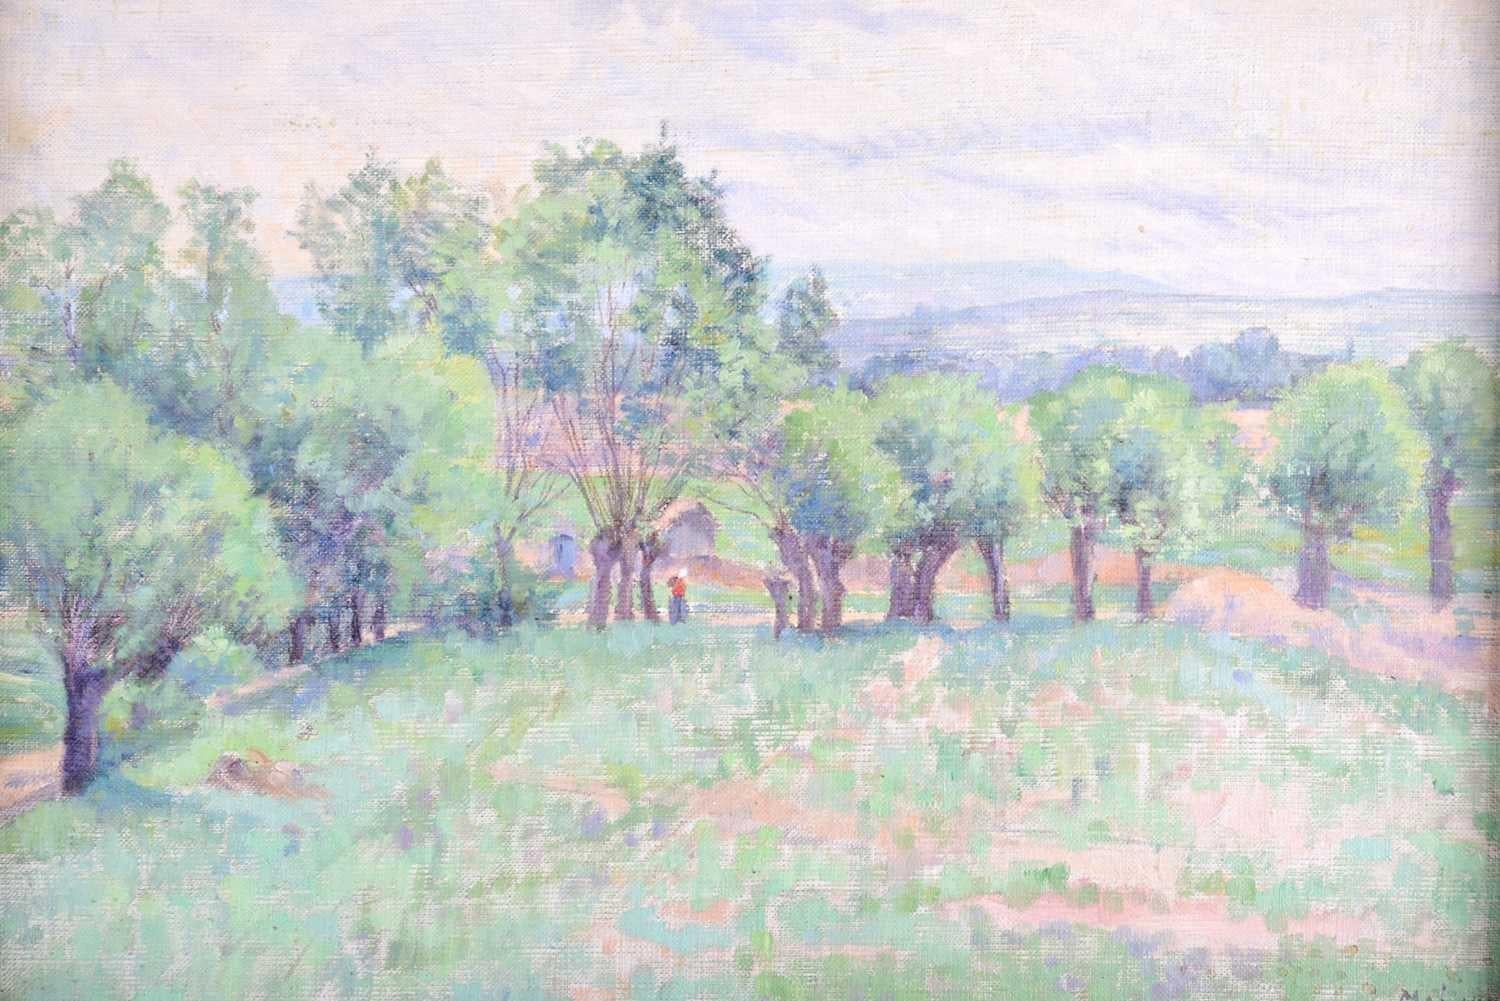 Französisches impressionistisches Ölgemälde der 1890er Jahre, Lady Walking Country Landscape Fields, Französisch – Painting von (follower of) Camille Pissarro